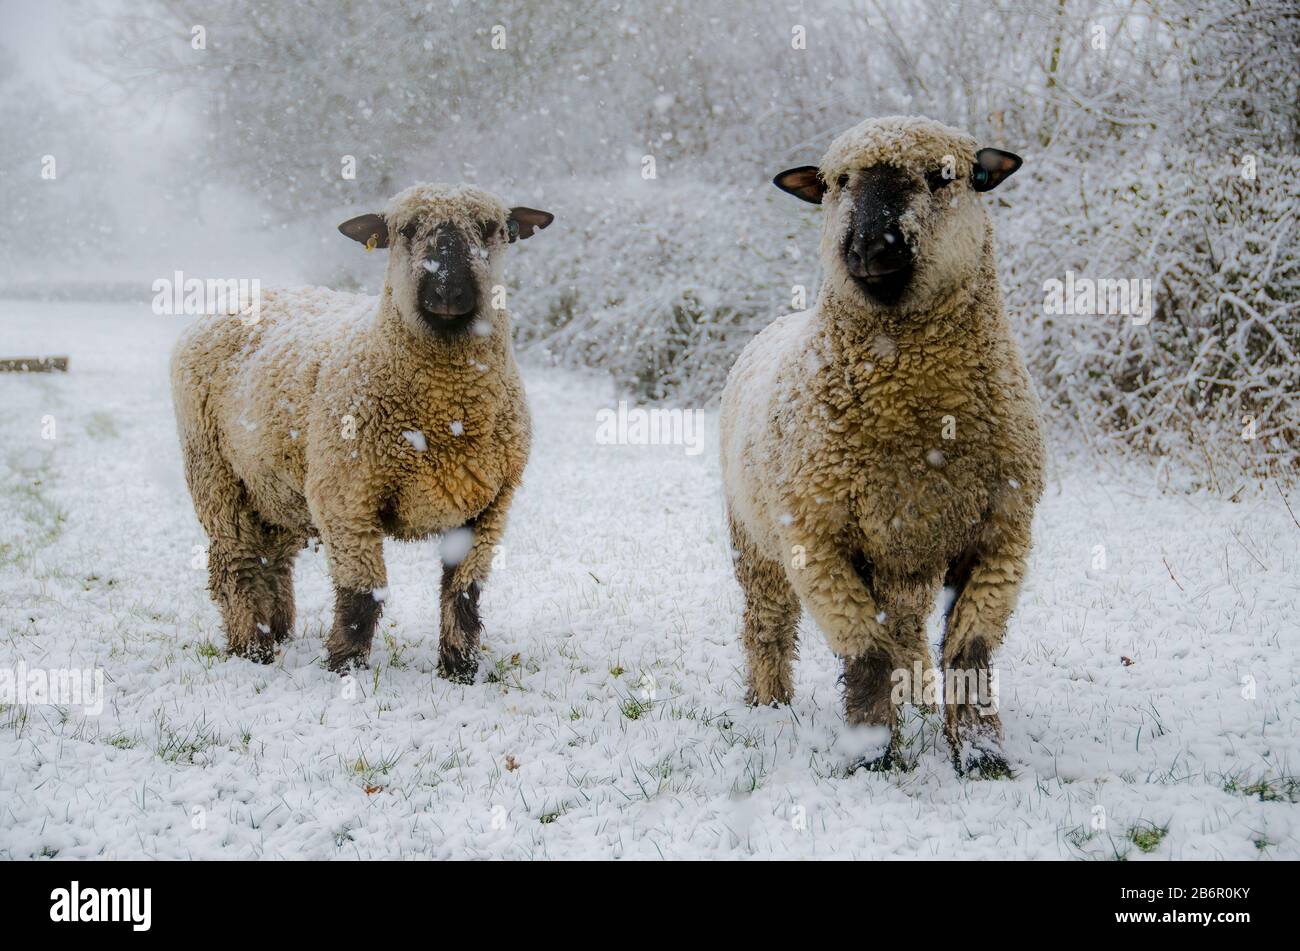 Ein Paar Oxford-Mutterschafe in ihren Wintermänteln beobachten diesen Fotografen, als er im Schnee niederkniet, um ihr Bild aufzunehmen Stockfoto